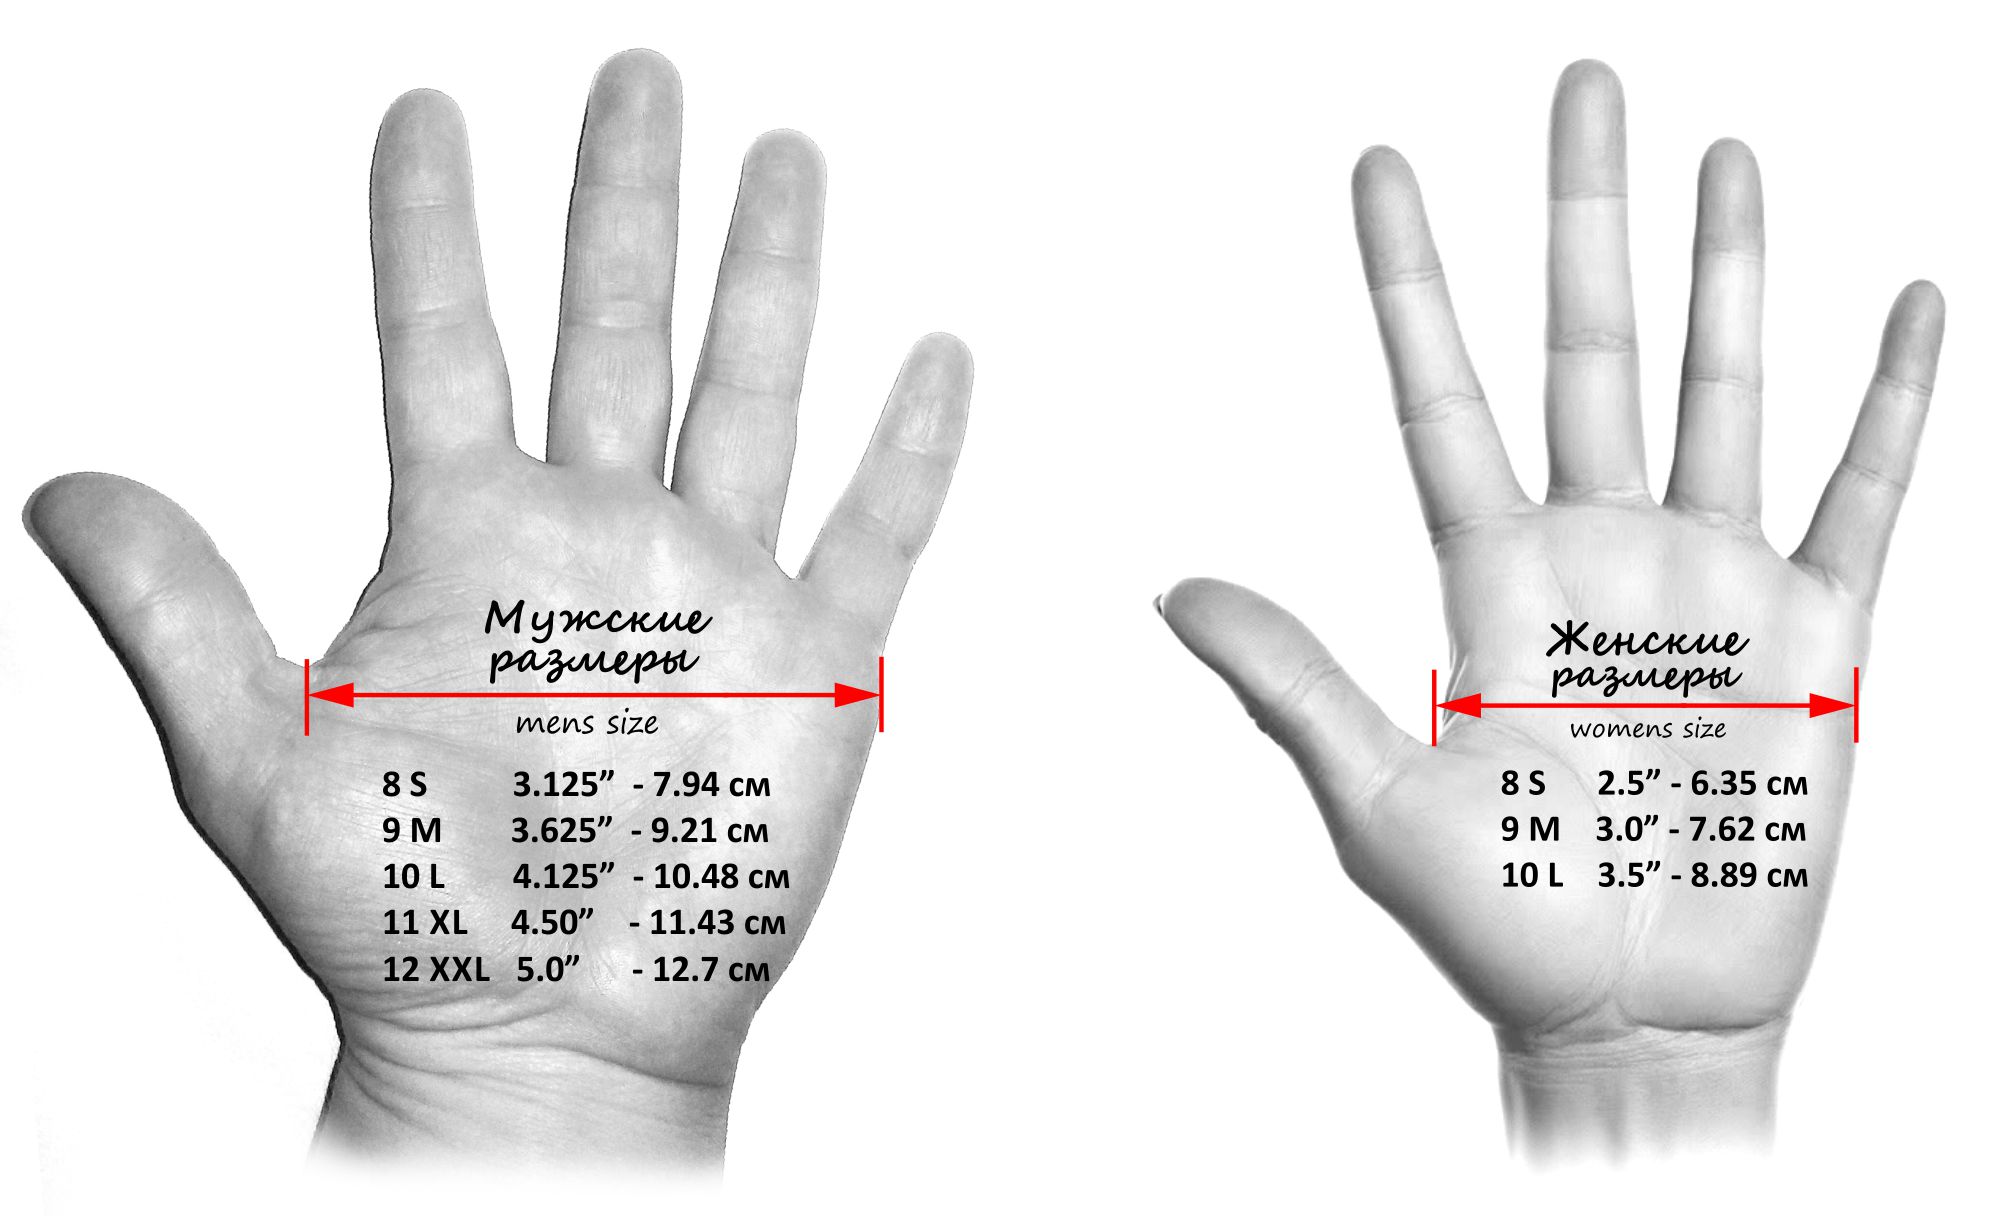 Перчатки какой руки. Как измеряется обхват ладони для перчаток. Как правильно измерить обхват ладони для размера перчатки. Как узнать свой размер руки для перчаток. Как понять размер руки для перчатки.